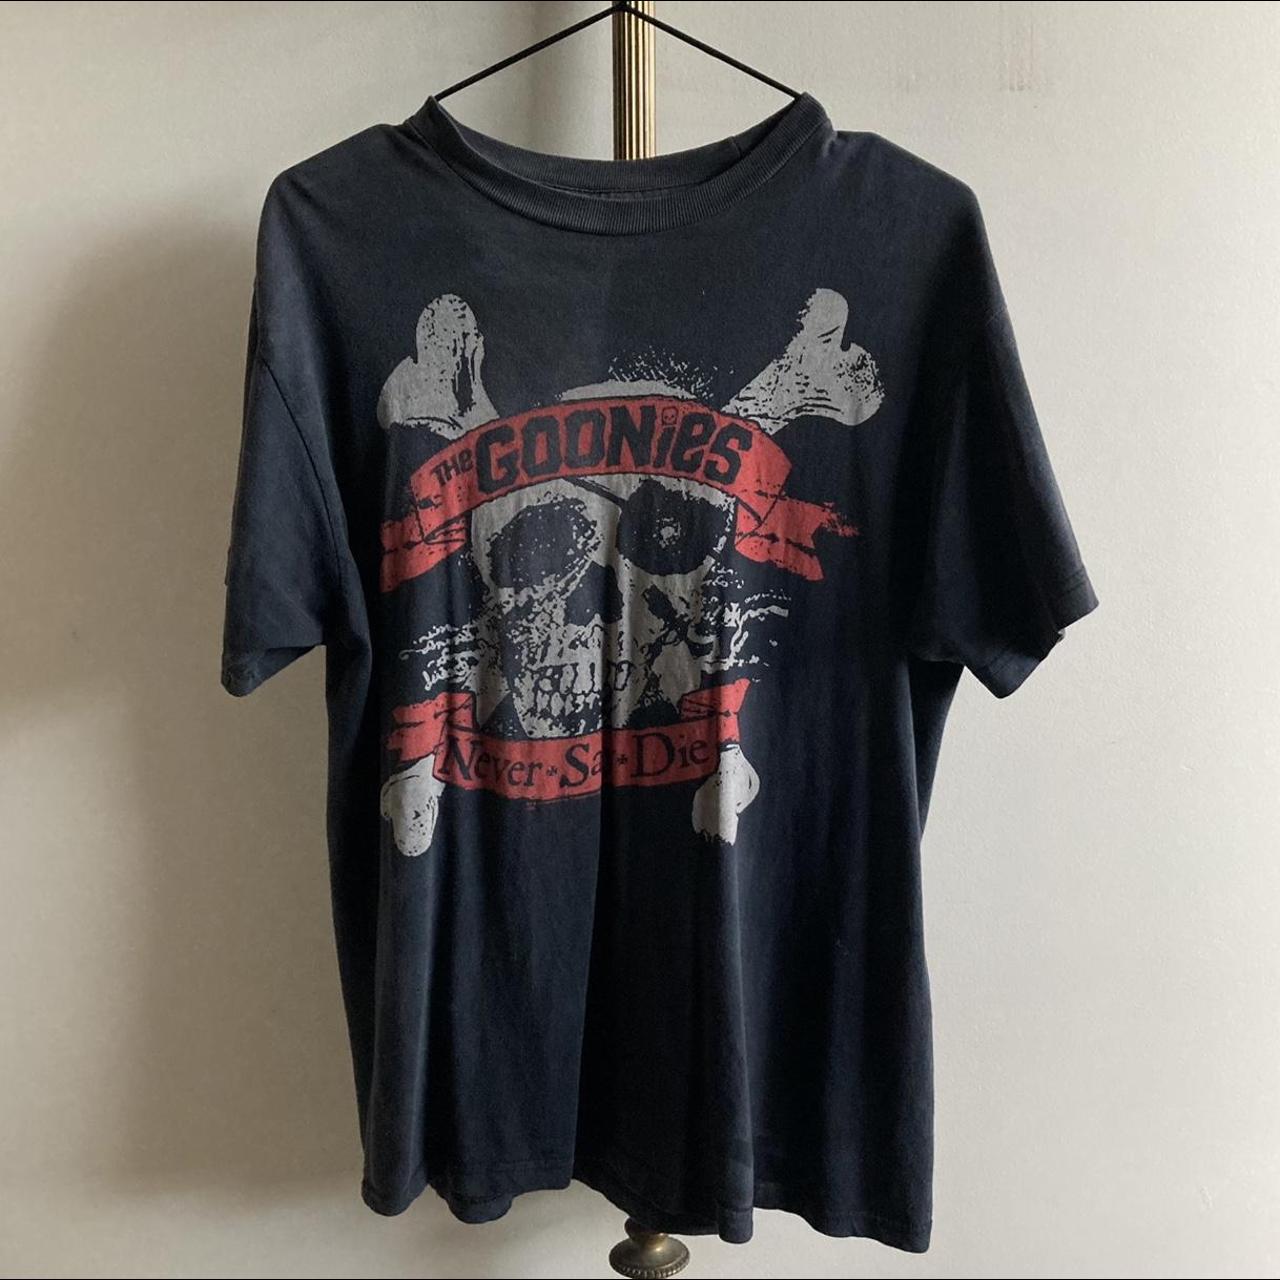 🏴‍☠️ ‘The Goonies’ Vintage Black T-Shirt 🏴‍☠️ American... - Depop